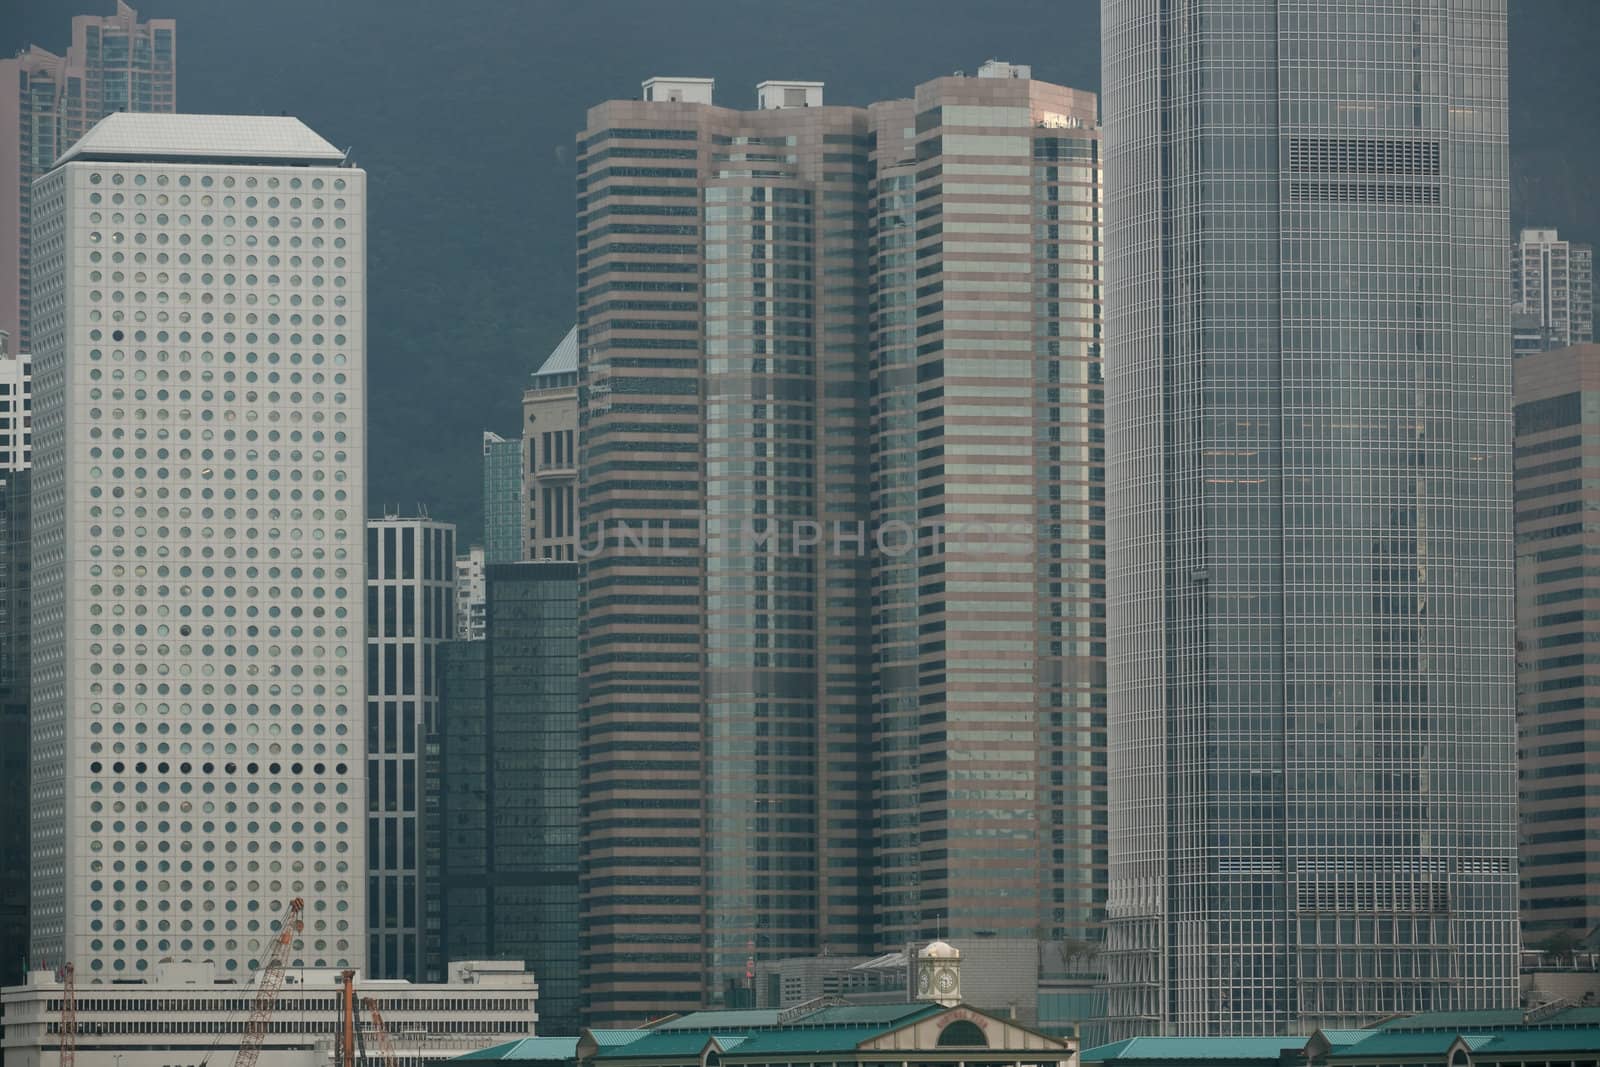 details of office buildings in Hong Kong